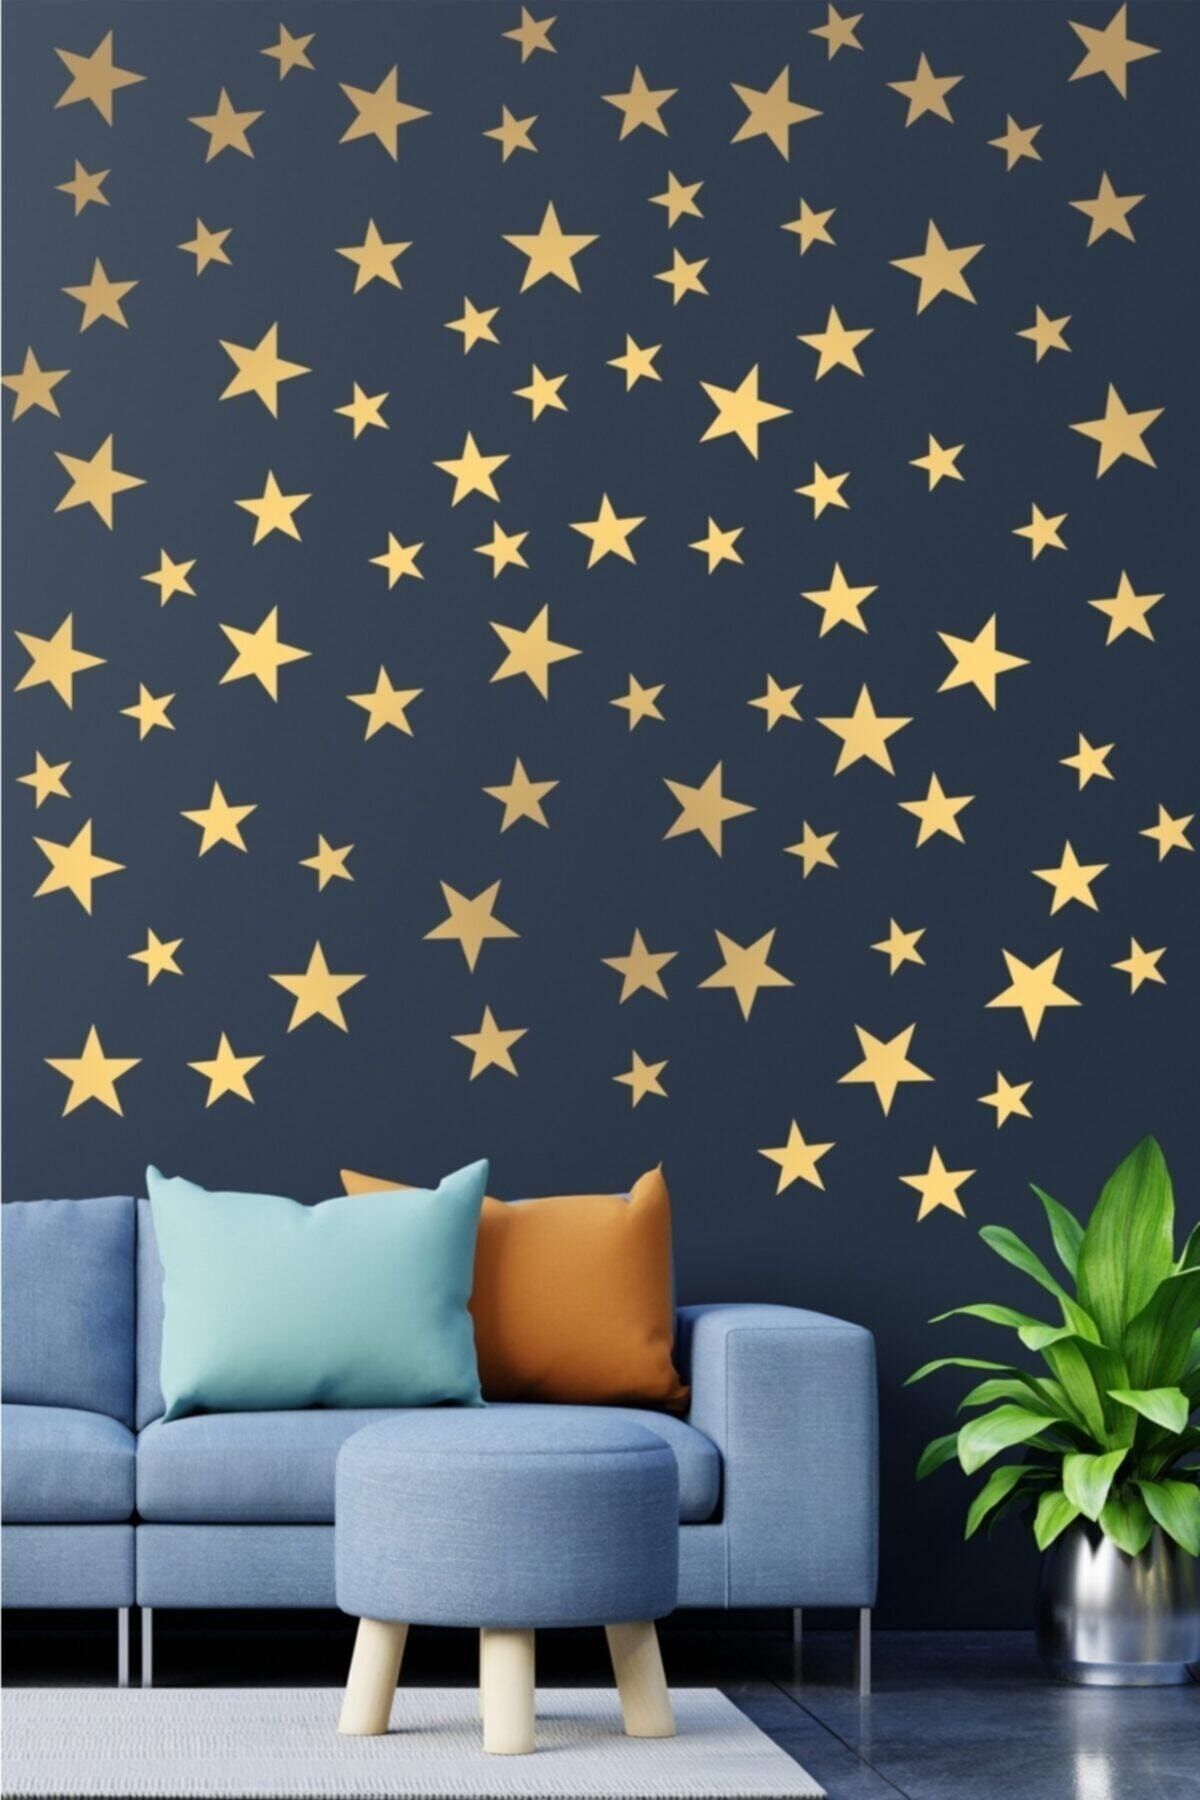 Kt Grup Çocuk Bebek Odası 300 Adet Metalize Altın Rengi Yıldız Dekoratif Duvar Sticker